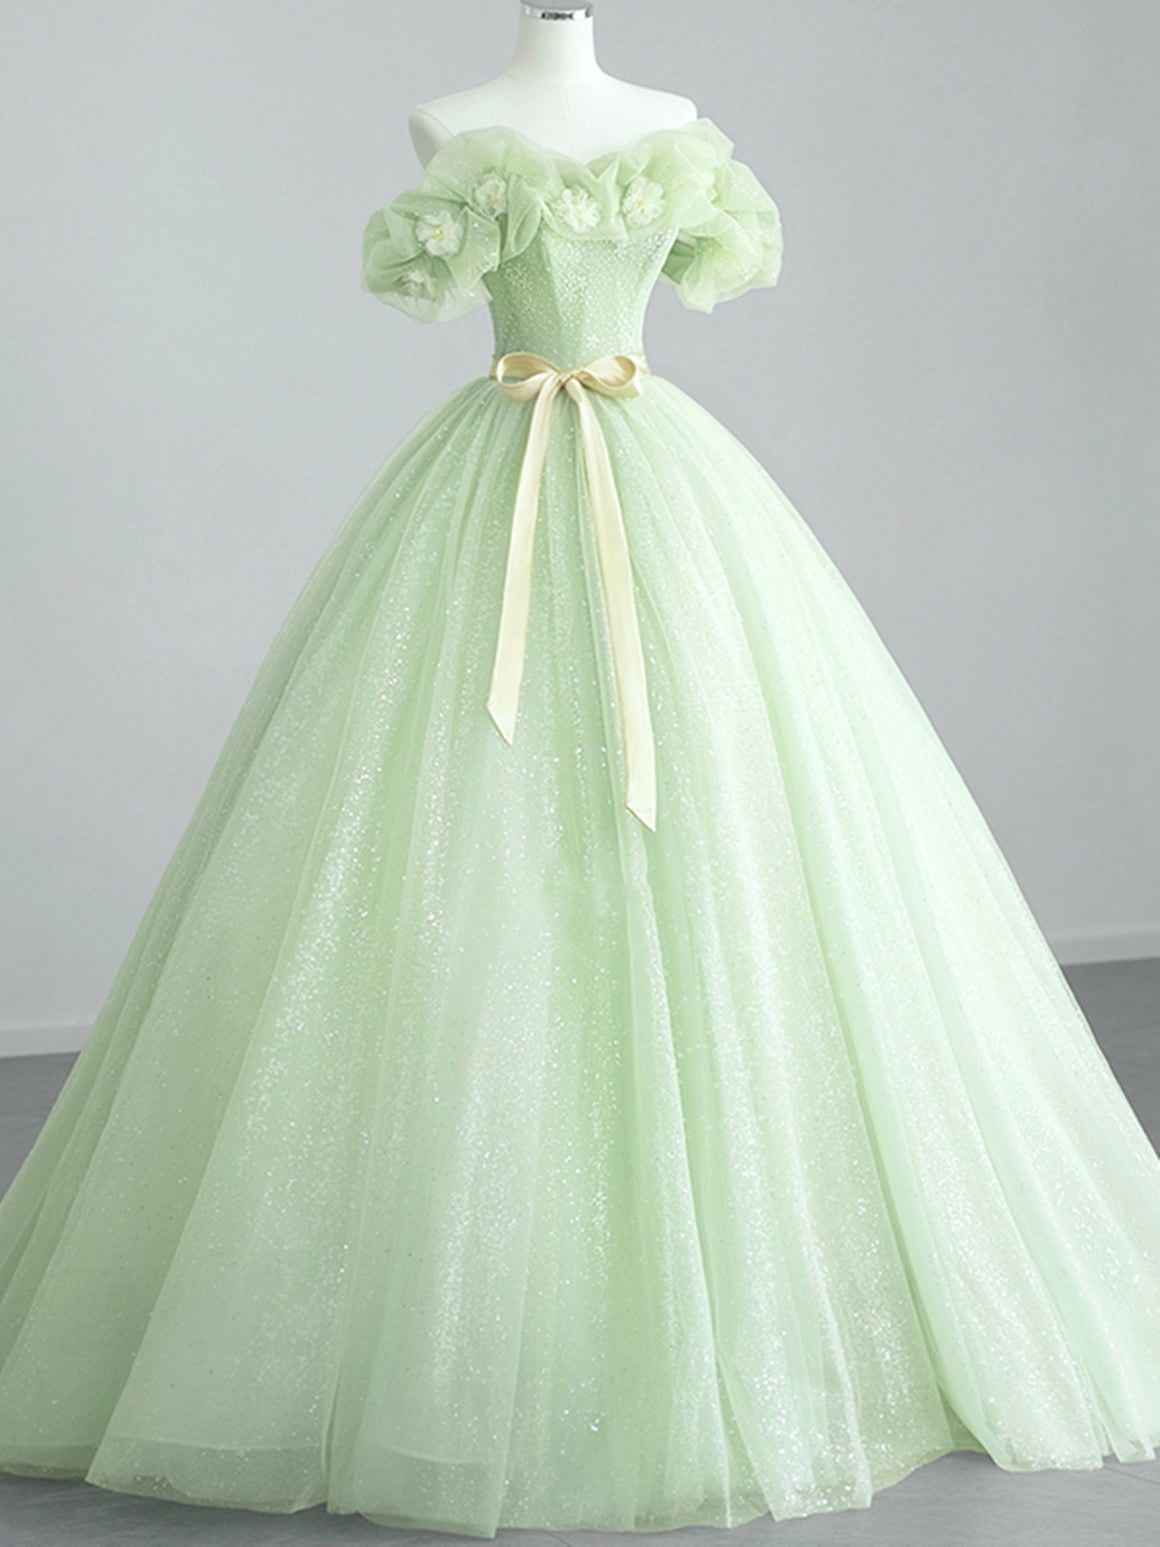 Off the Shoulder Light Green Floral Prom Dresses, Green Floral Formal Graduation Dress